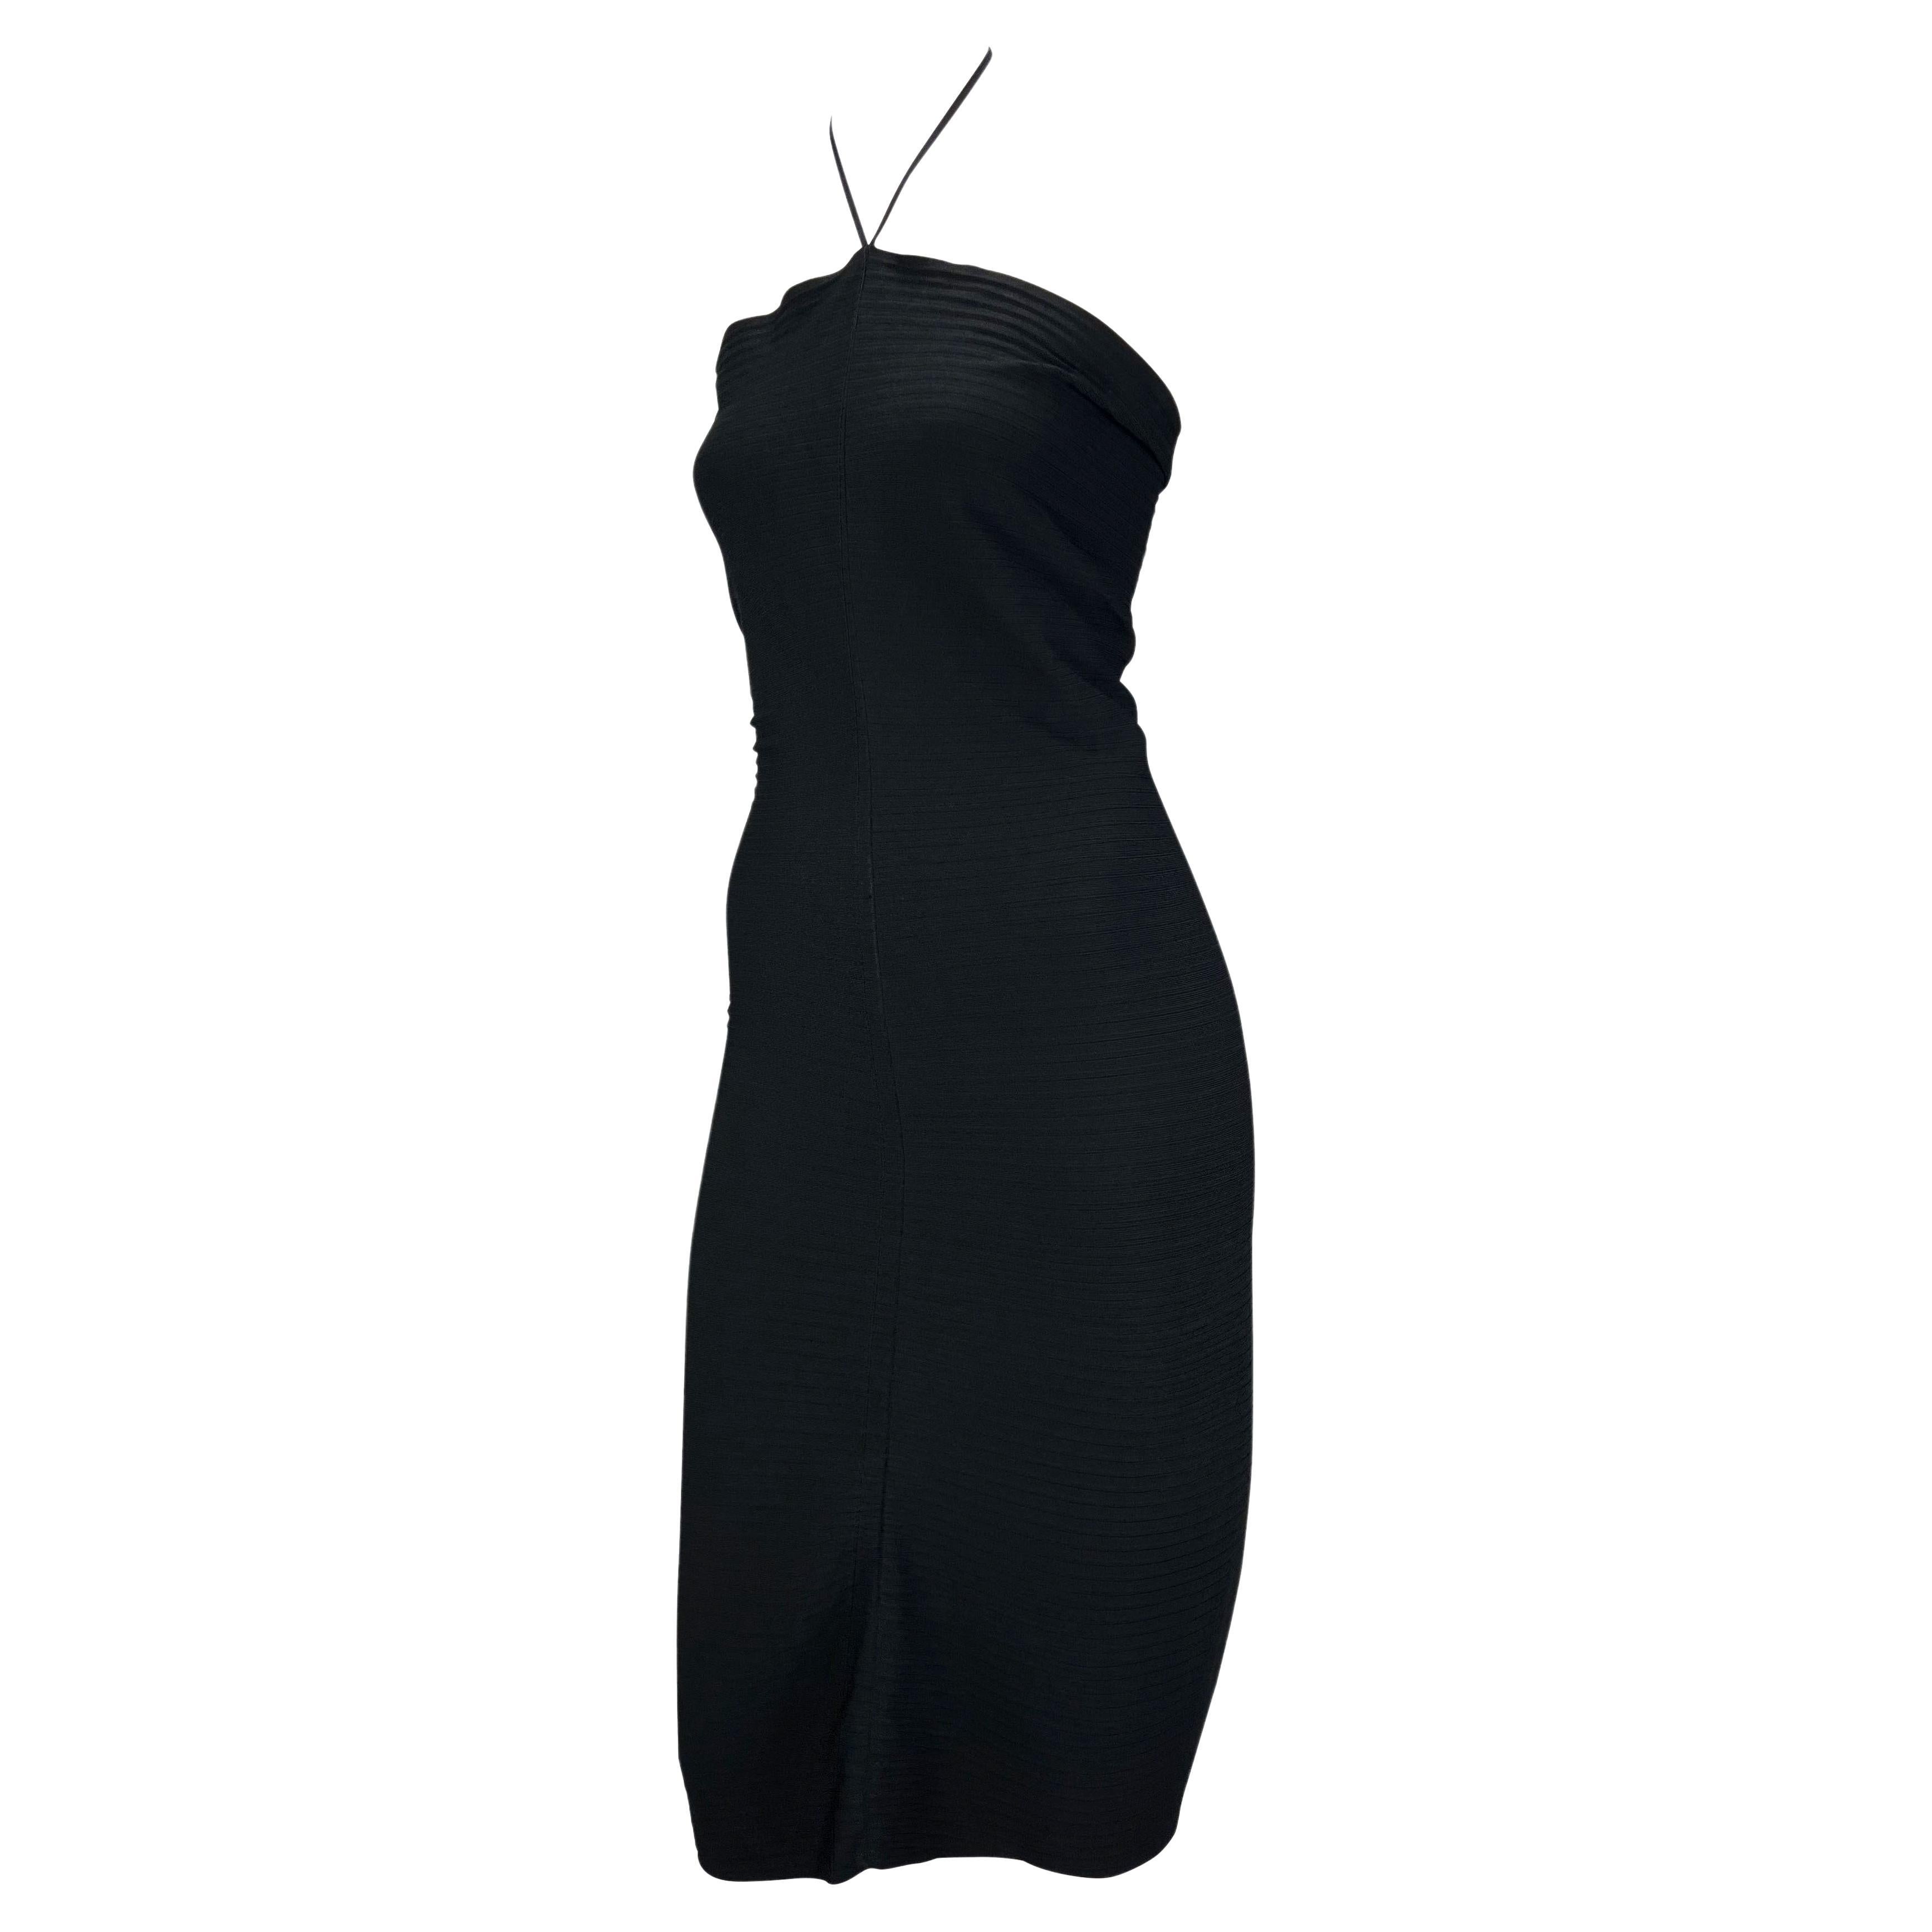 Présentation d'une robe tube Gucci en stretch noir, dessinée par Tom Ford. Issue de la collection printemps/été 2000, cette superbe robe moulante est dotée d'un dos nu et d'une fermeture en métal estampillé 